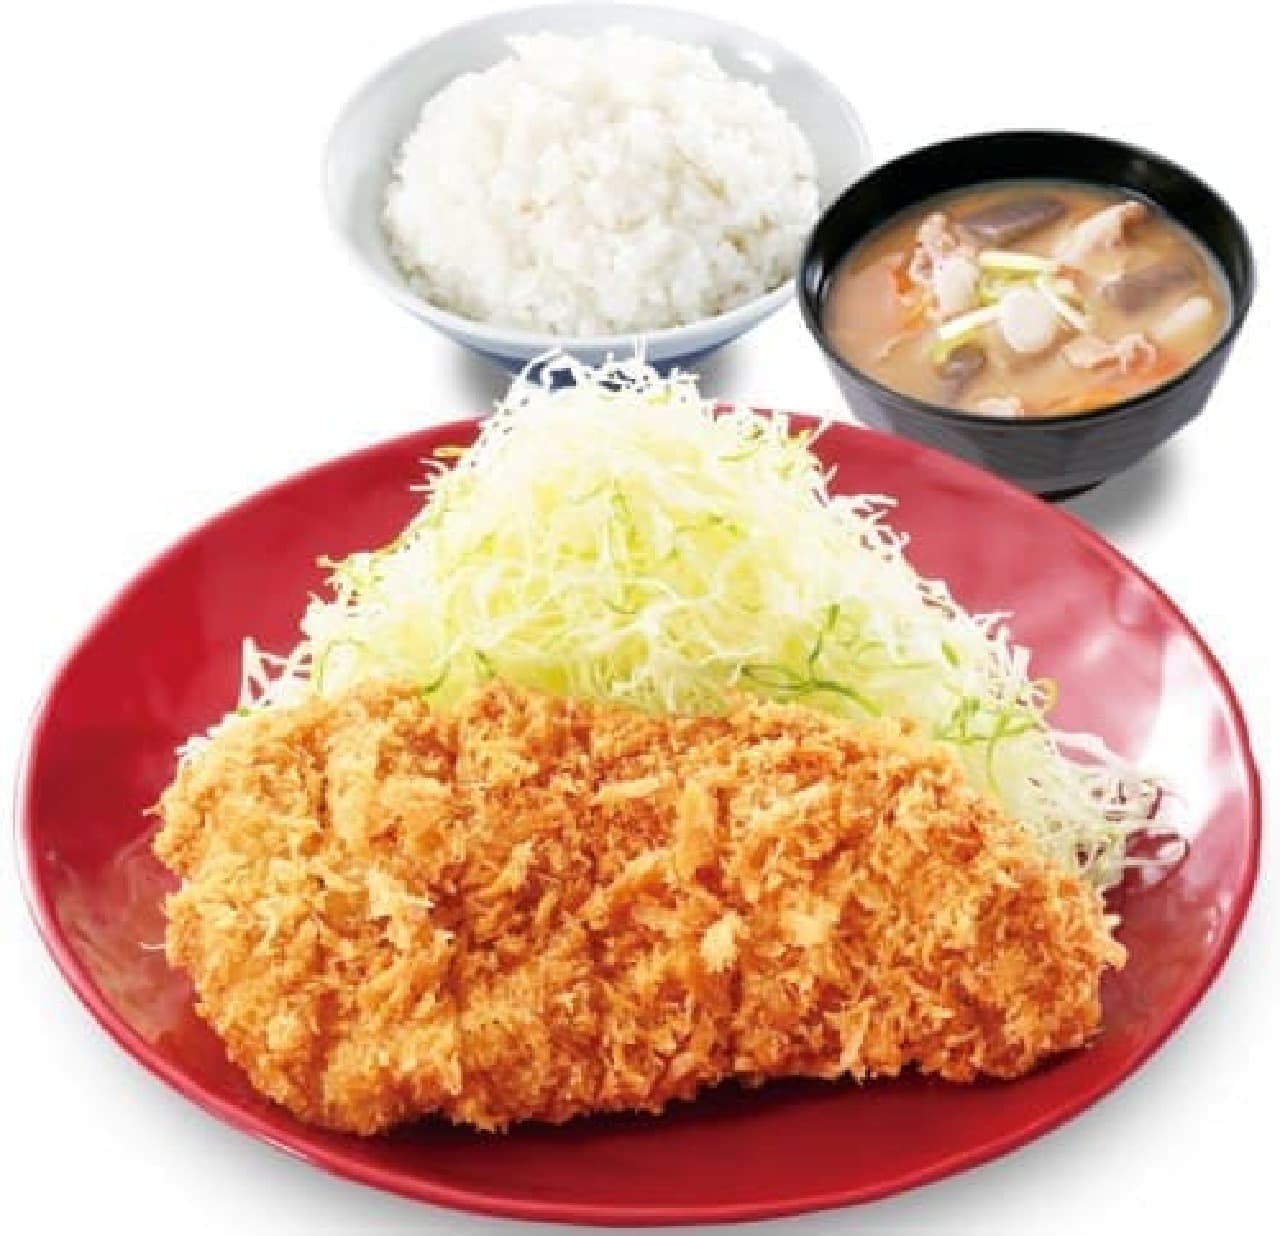 Katsuya "Chicken cutlet set meal"